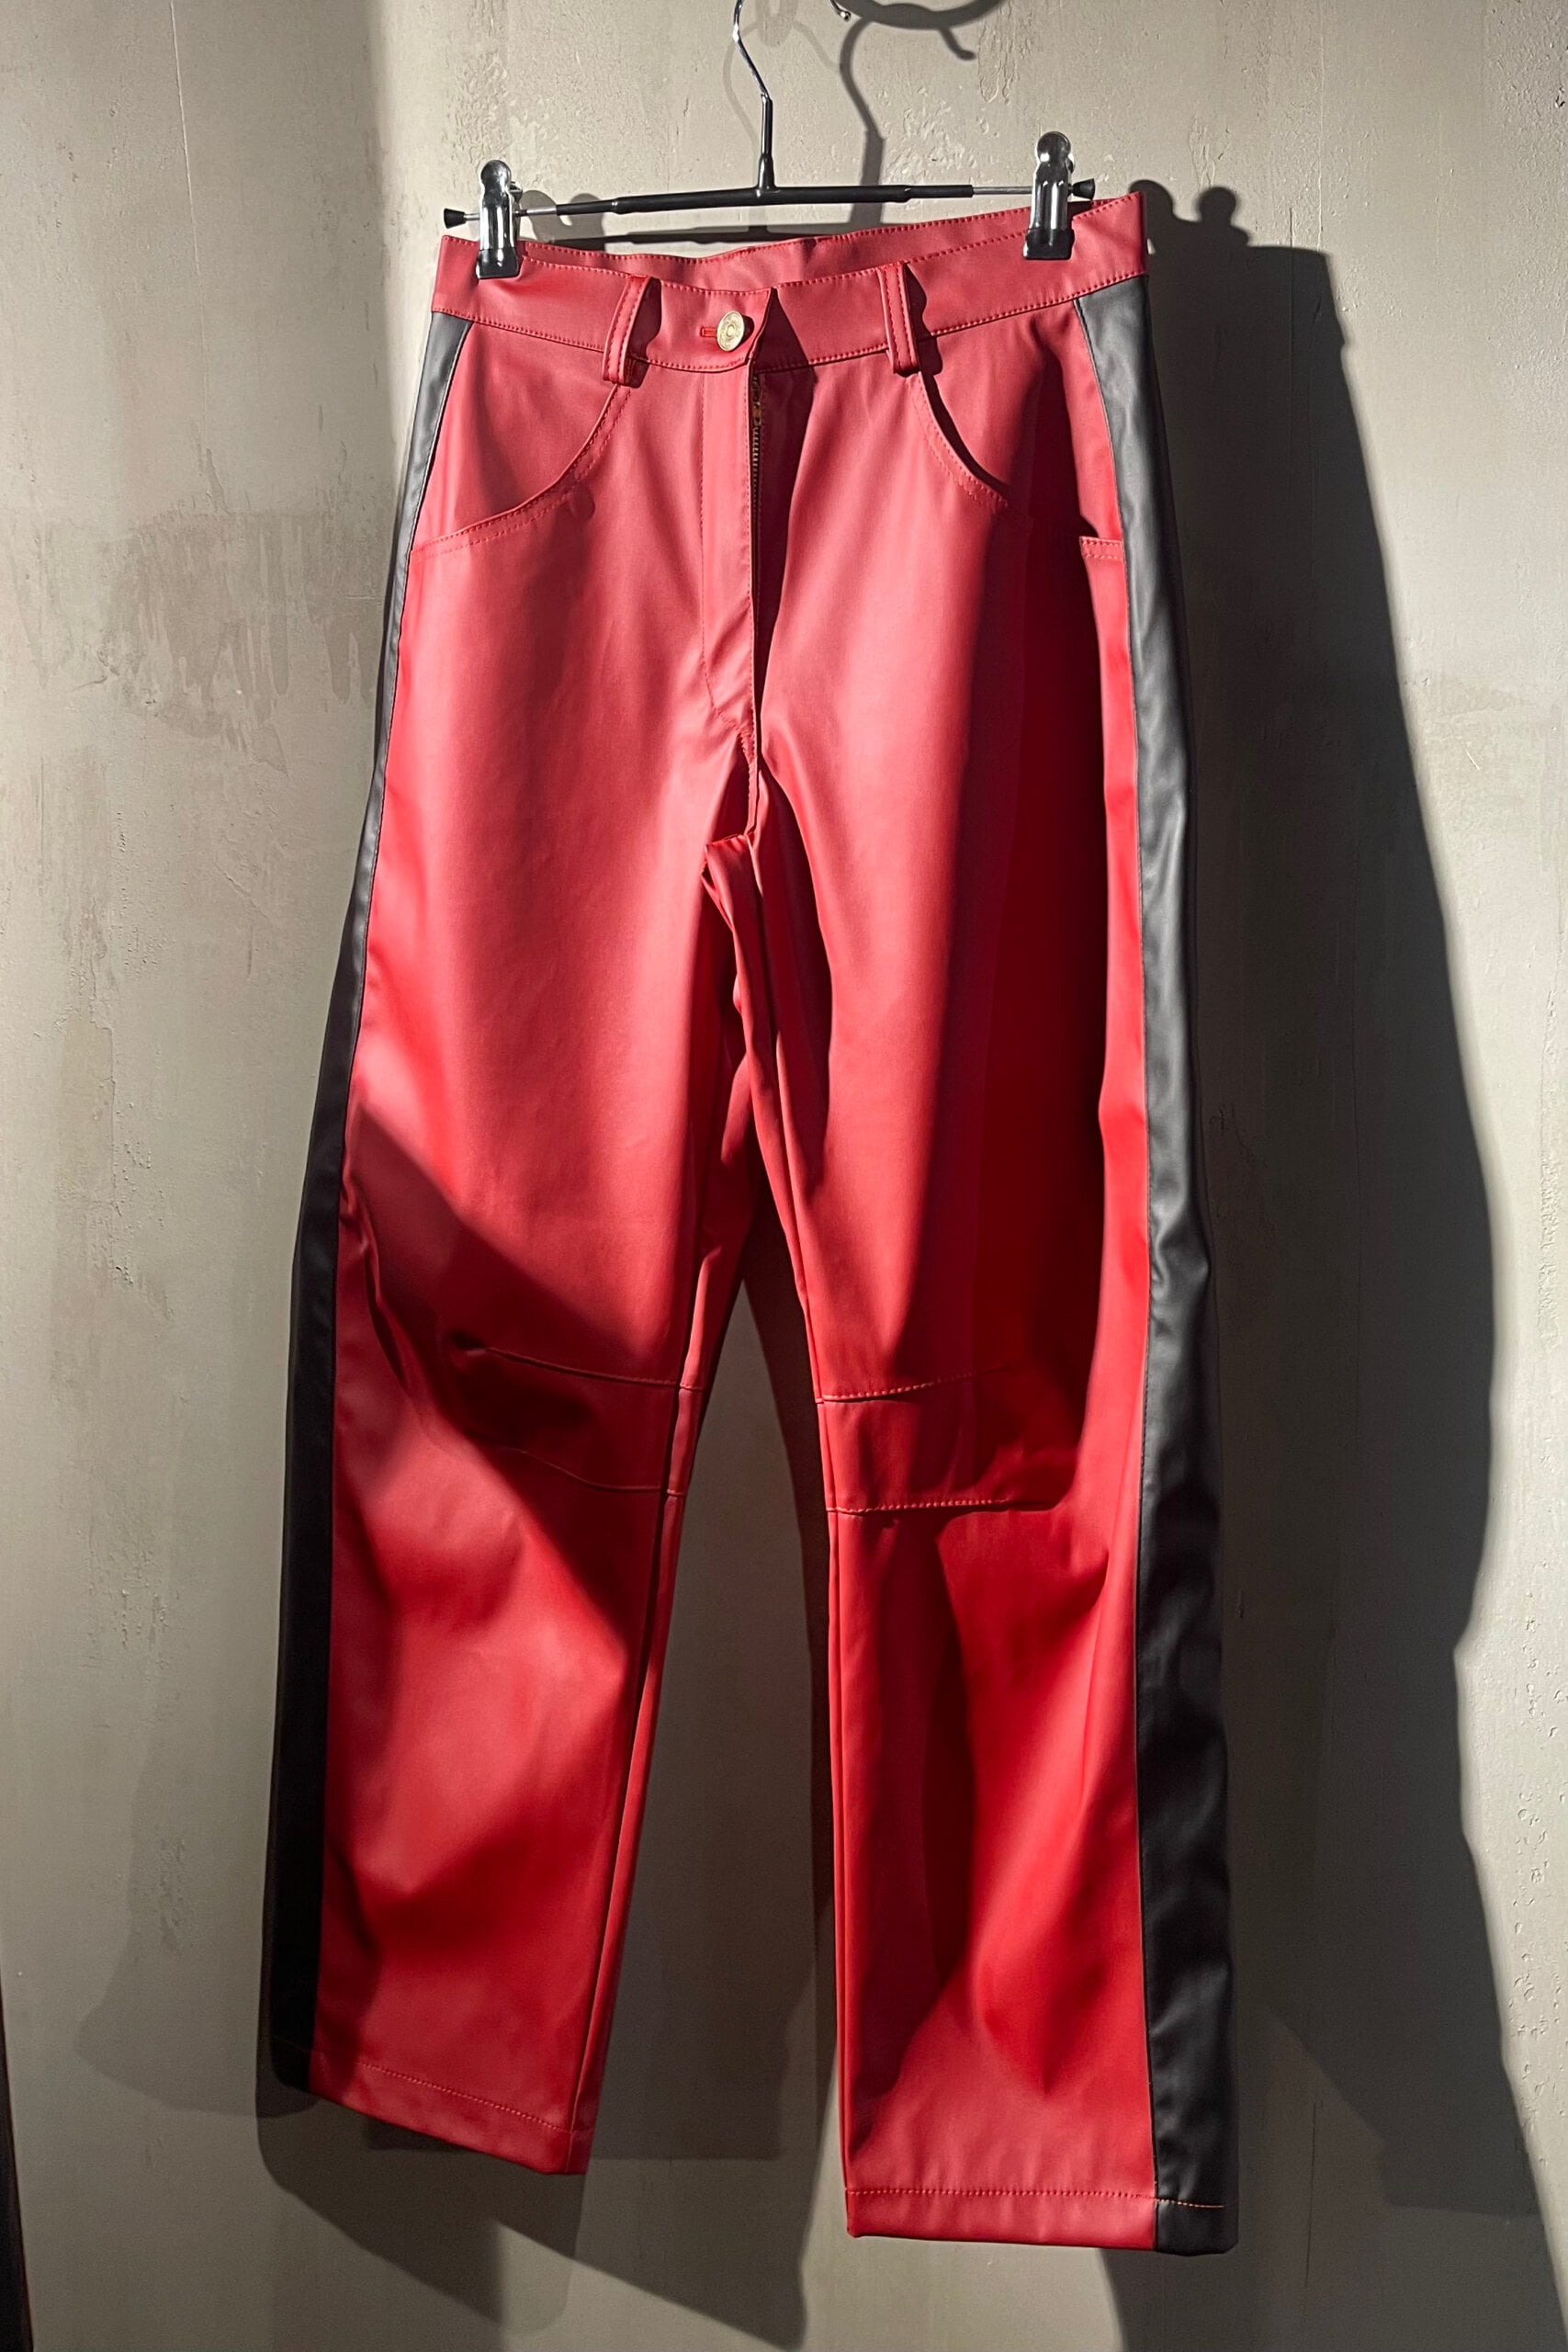 Pantalon ecocuero rojo con franja negra, pierna curva y tiro medio